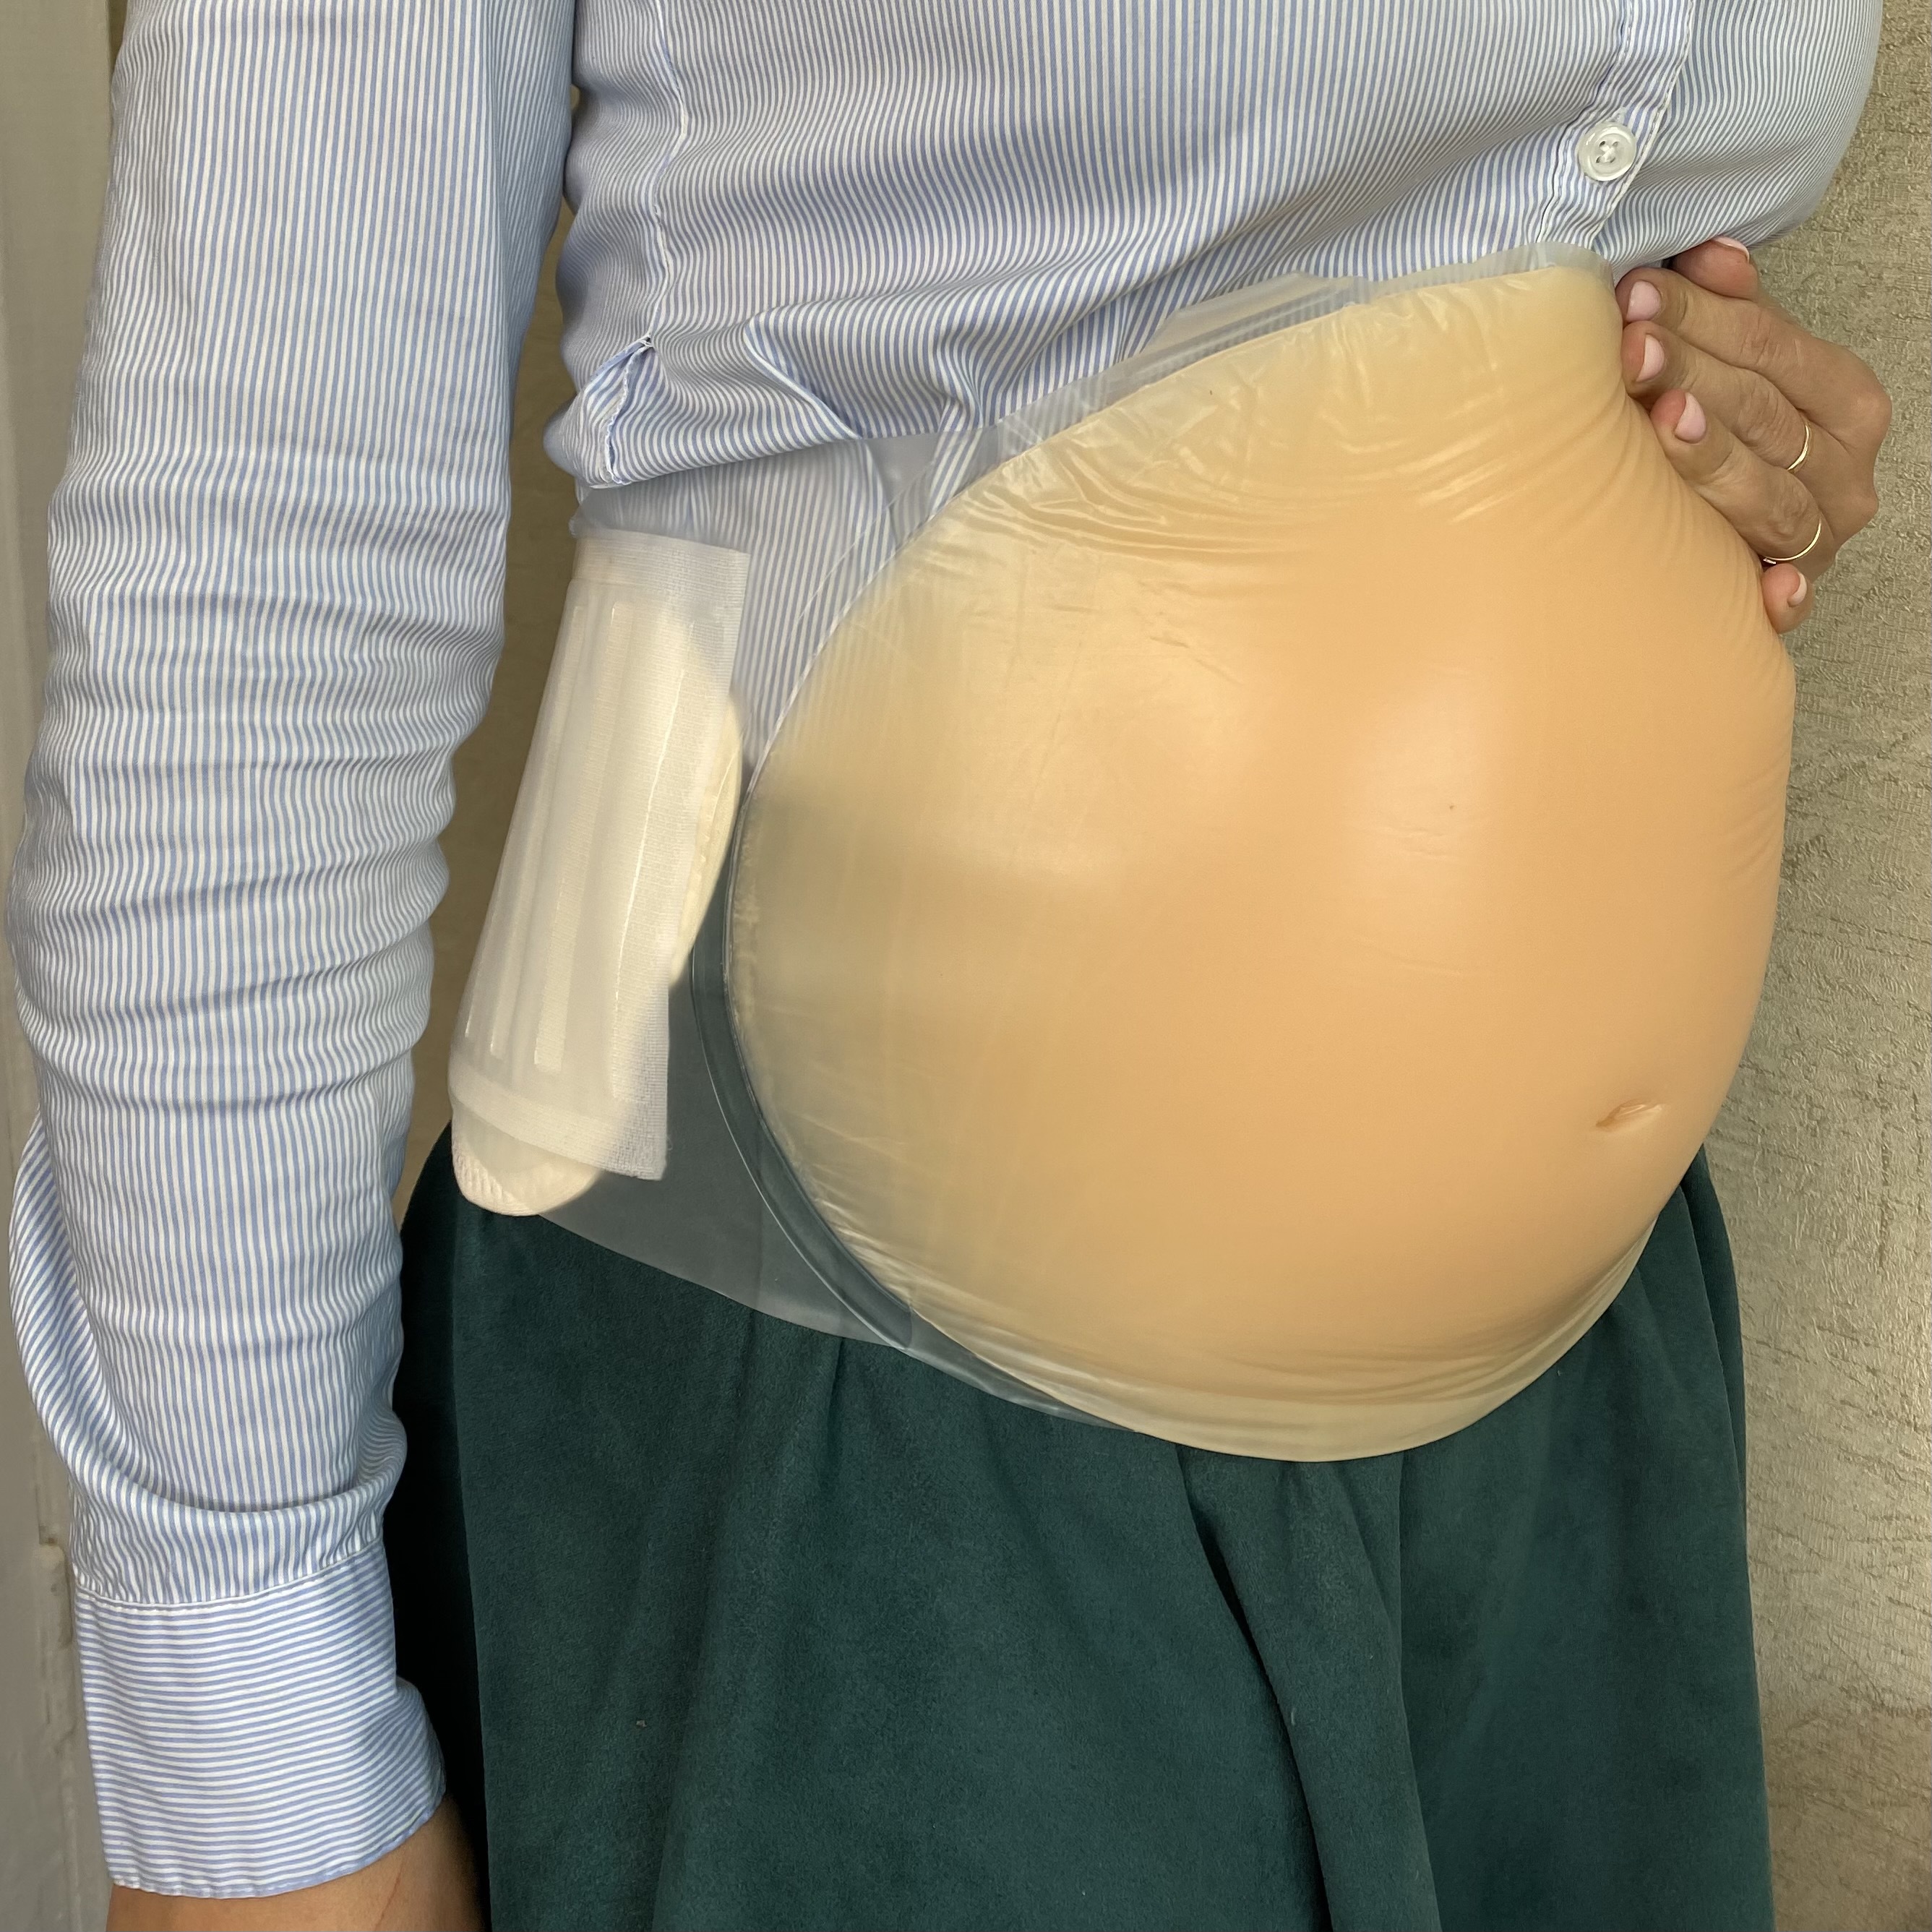 Силиконовый накладной живот для имитации беременности - 6 месяцев ModelSi